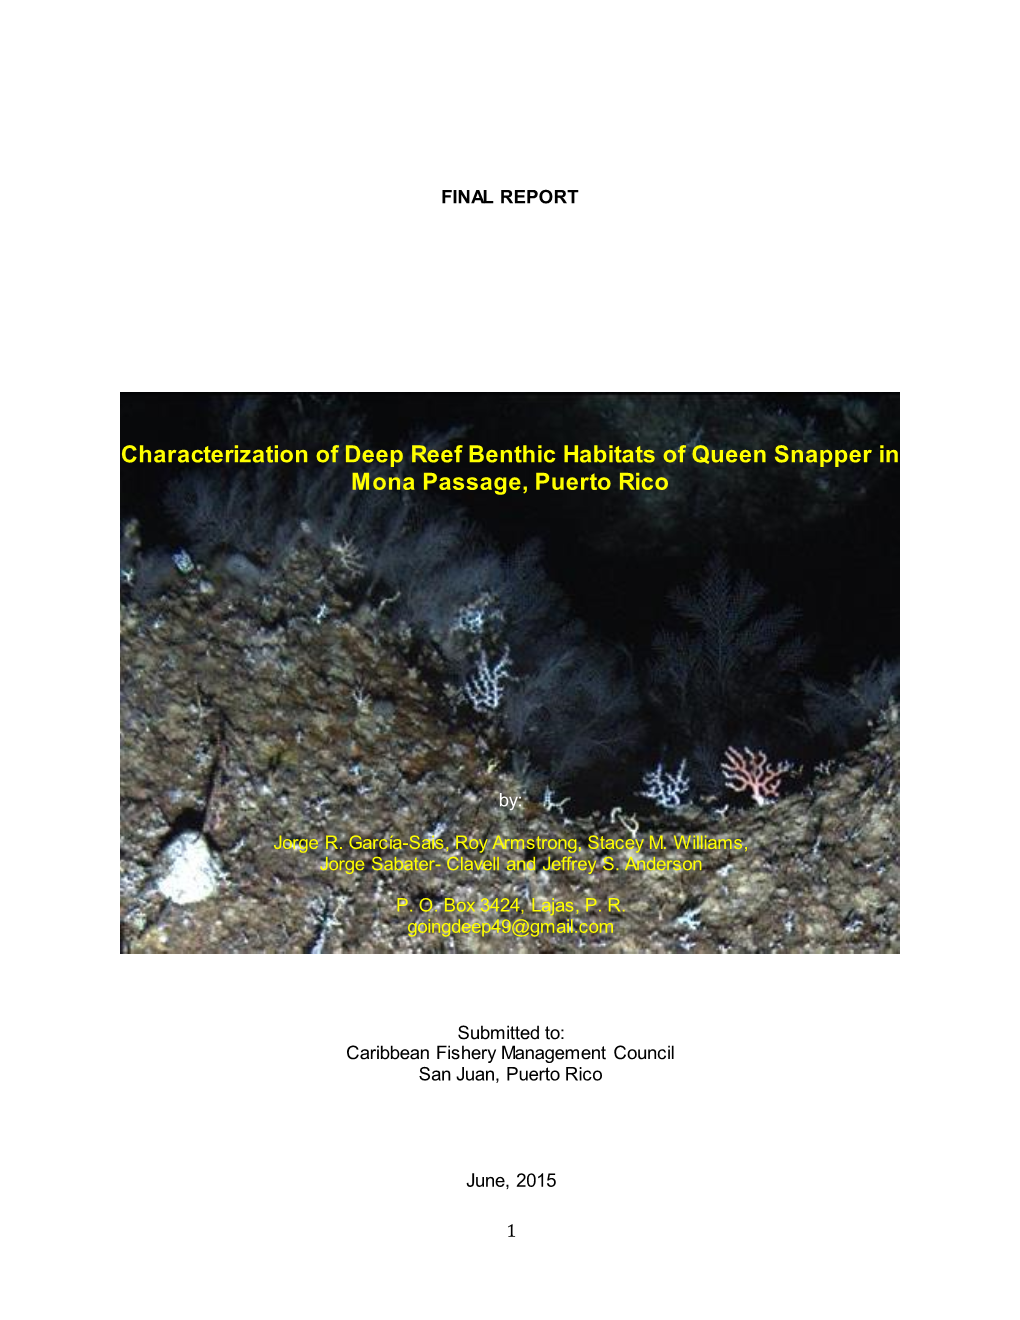 Characterization of Deep Reef Benthic Habitats of Queen Snapper in Mona Passage, Puerto Rico